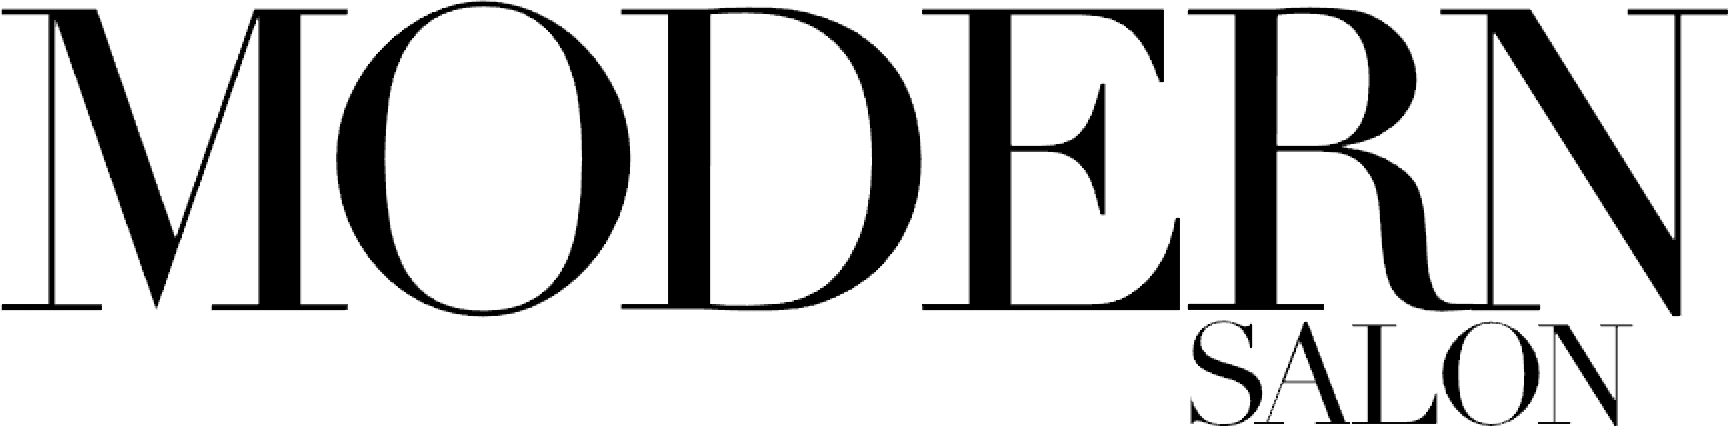 modern salon logo